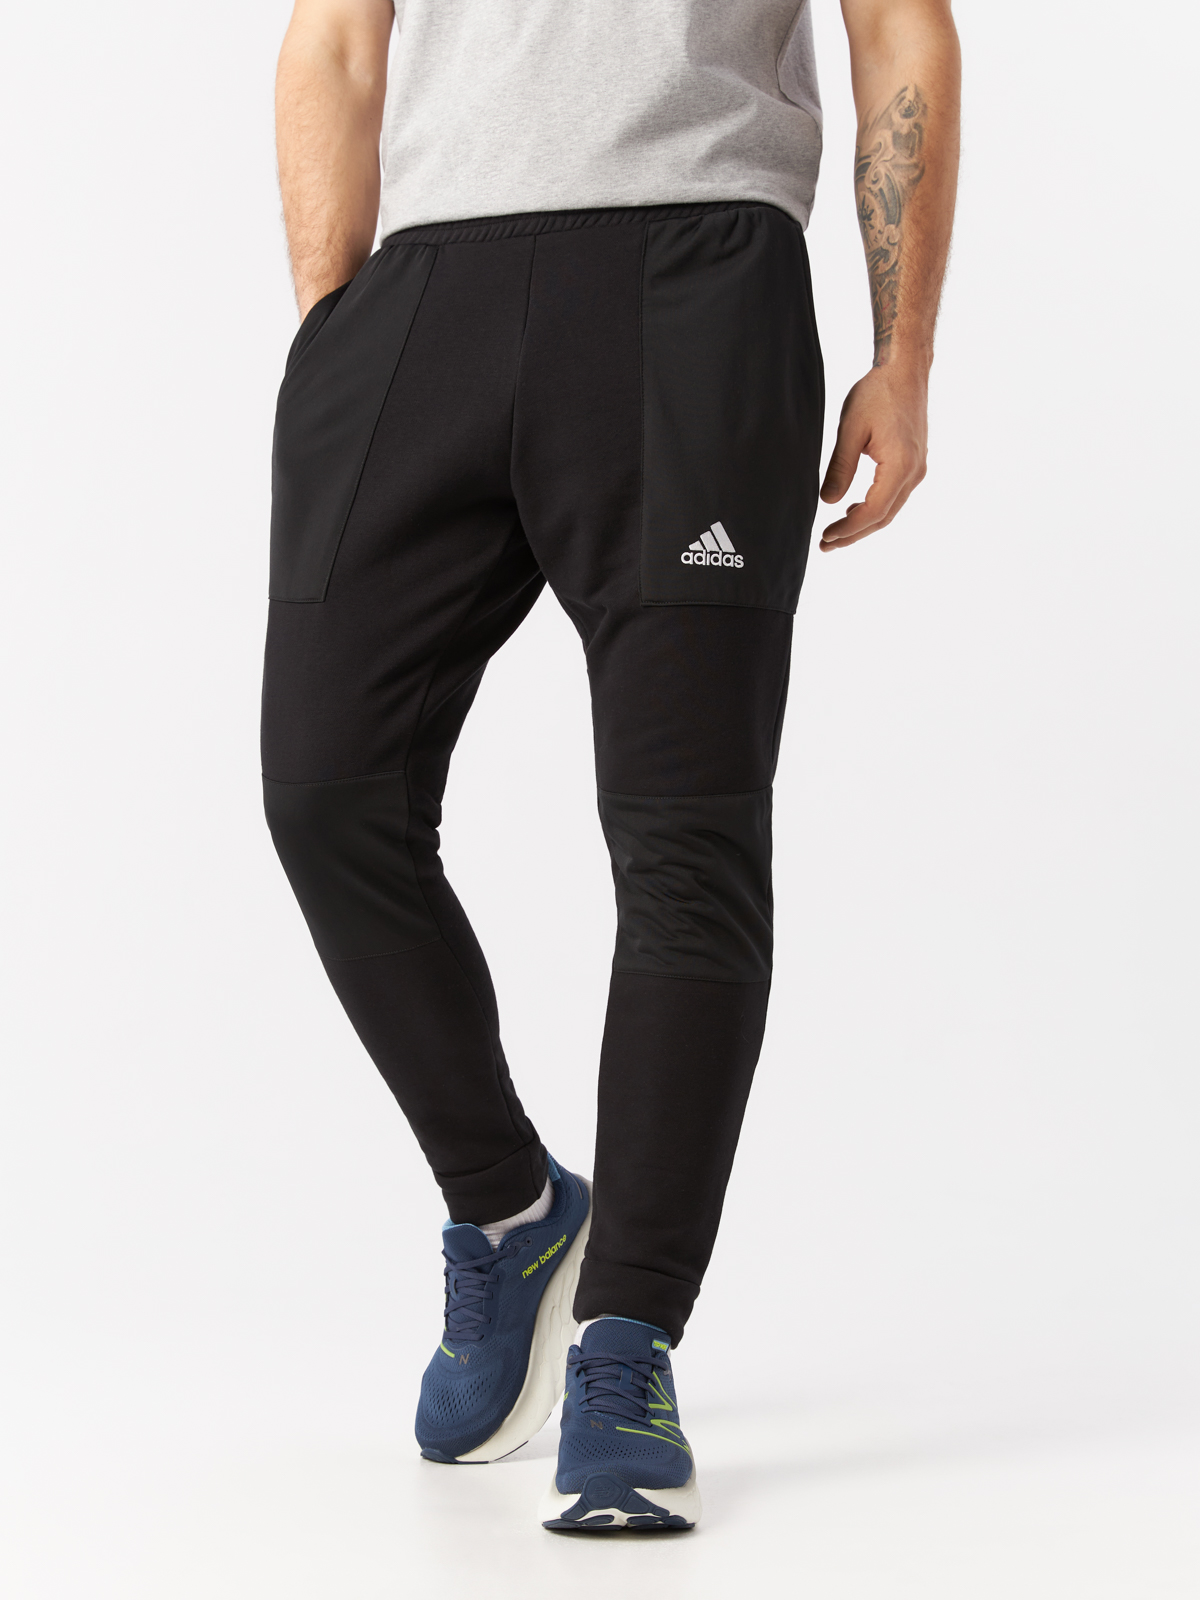 Брюки спортивные Adidas для мужчин, размер L, чёрный-095A, HK0384, 1 шт.